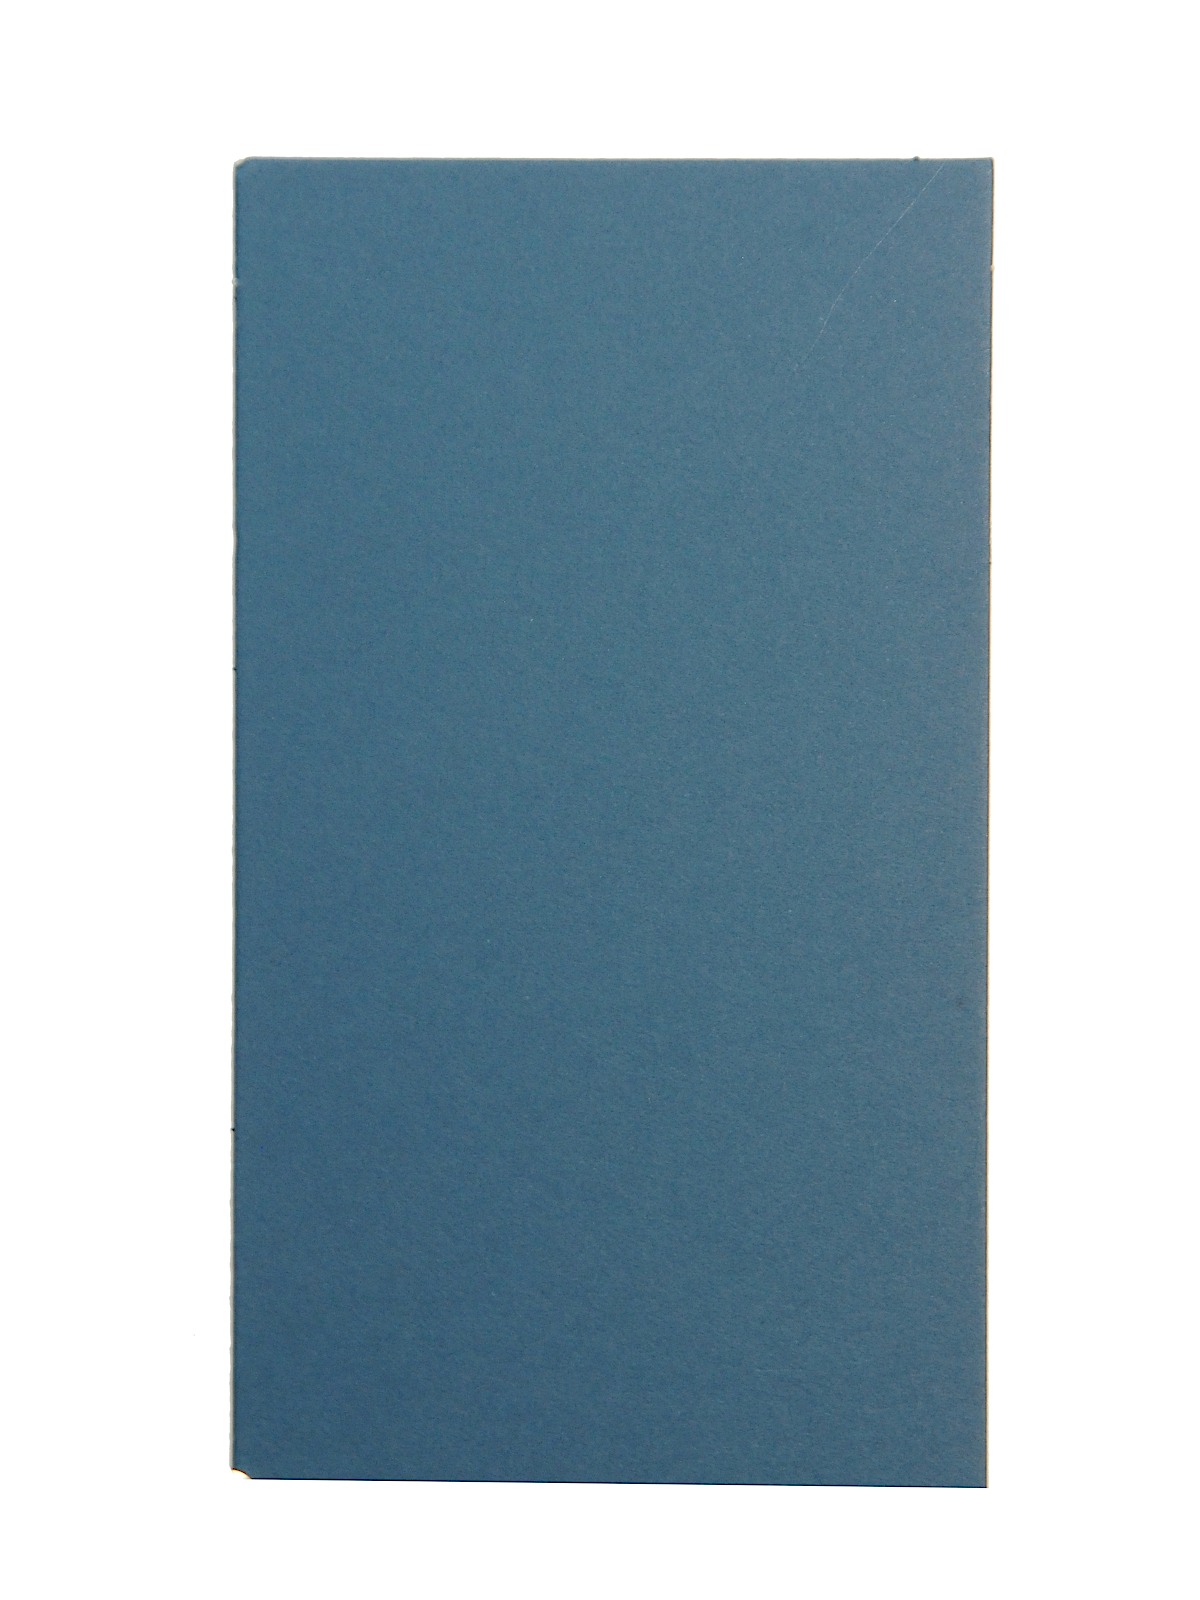 Berkshire Mat Board Steel Blue 32 In. X 40 In. Cream Core